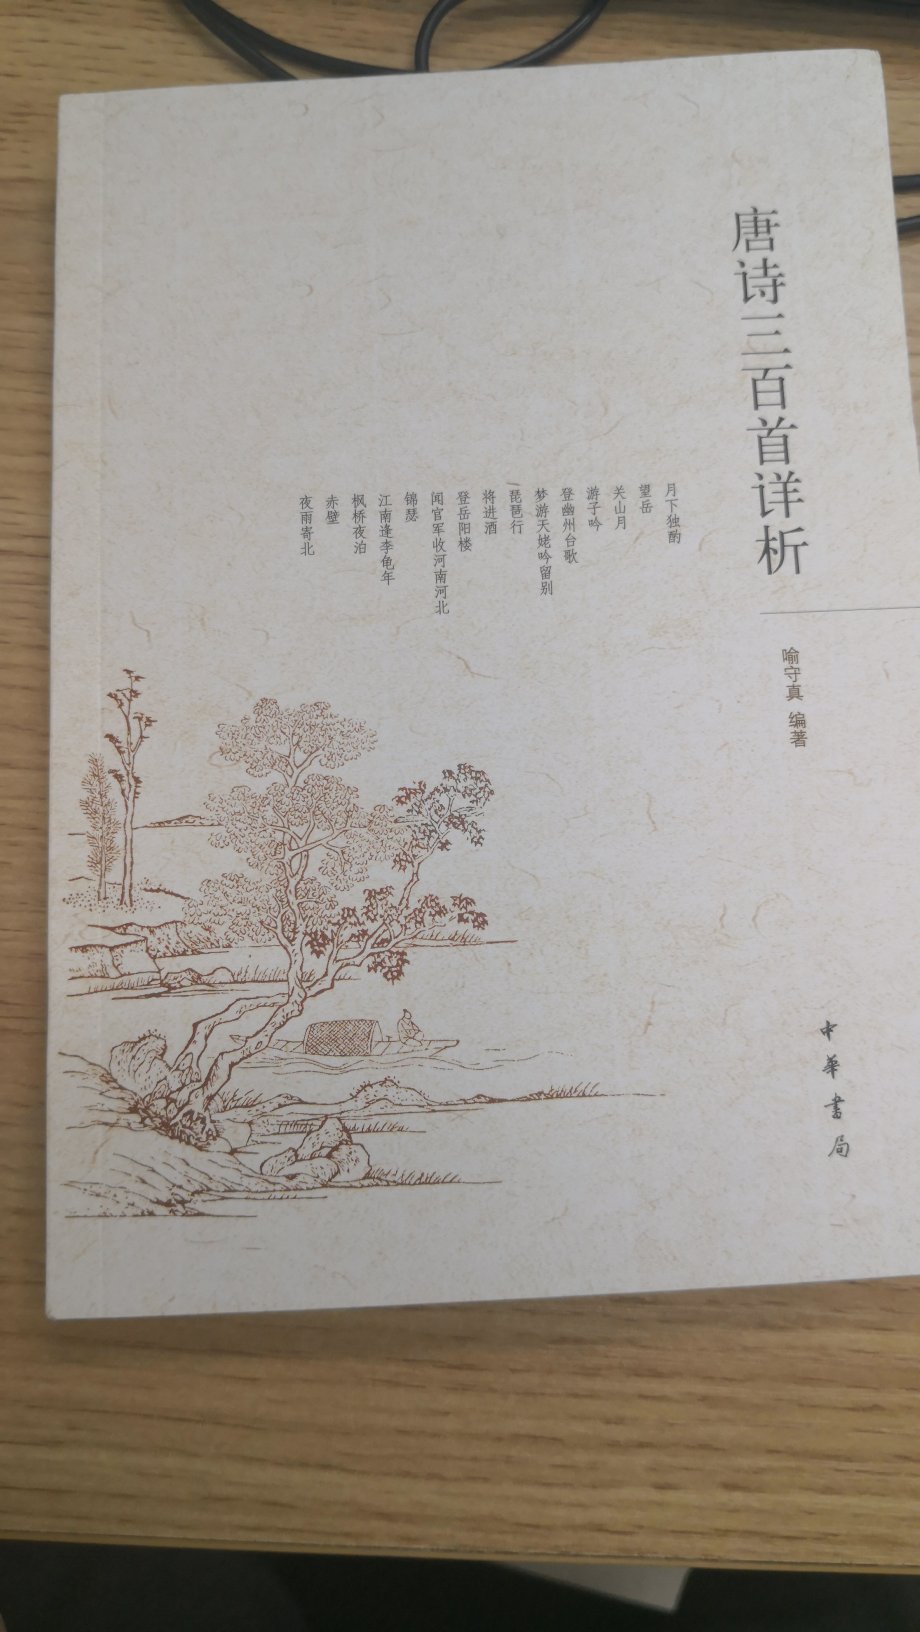 中华书局的这个唐诗三百首很经典……